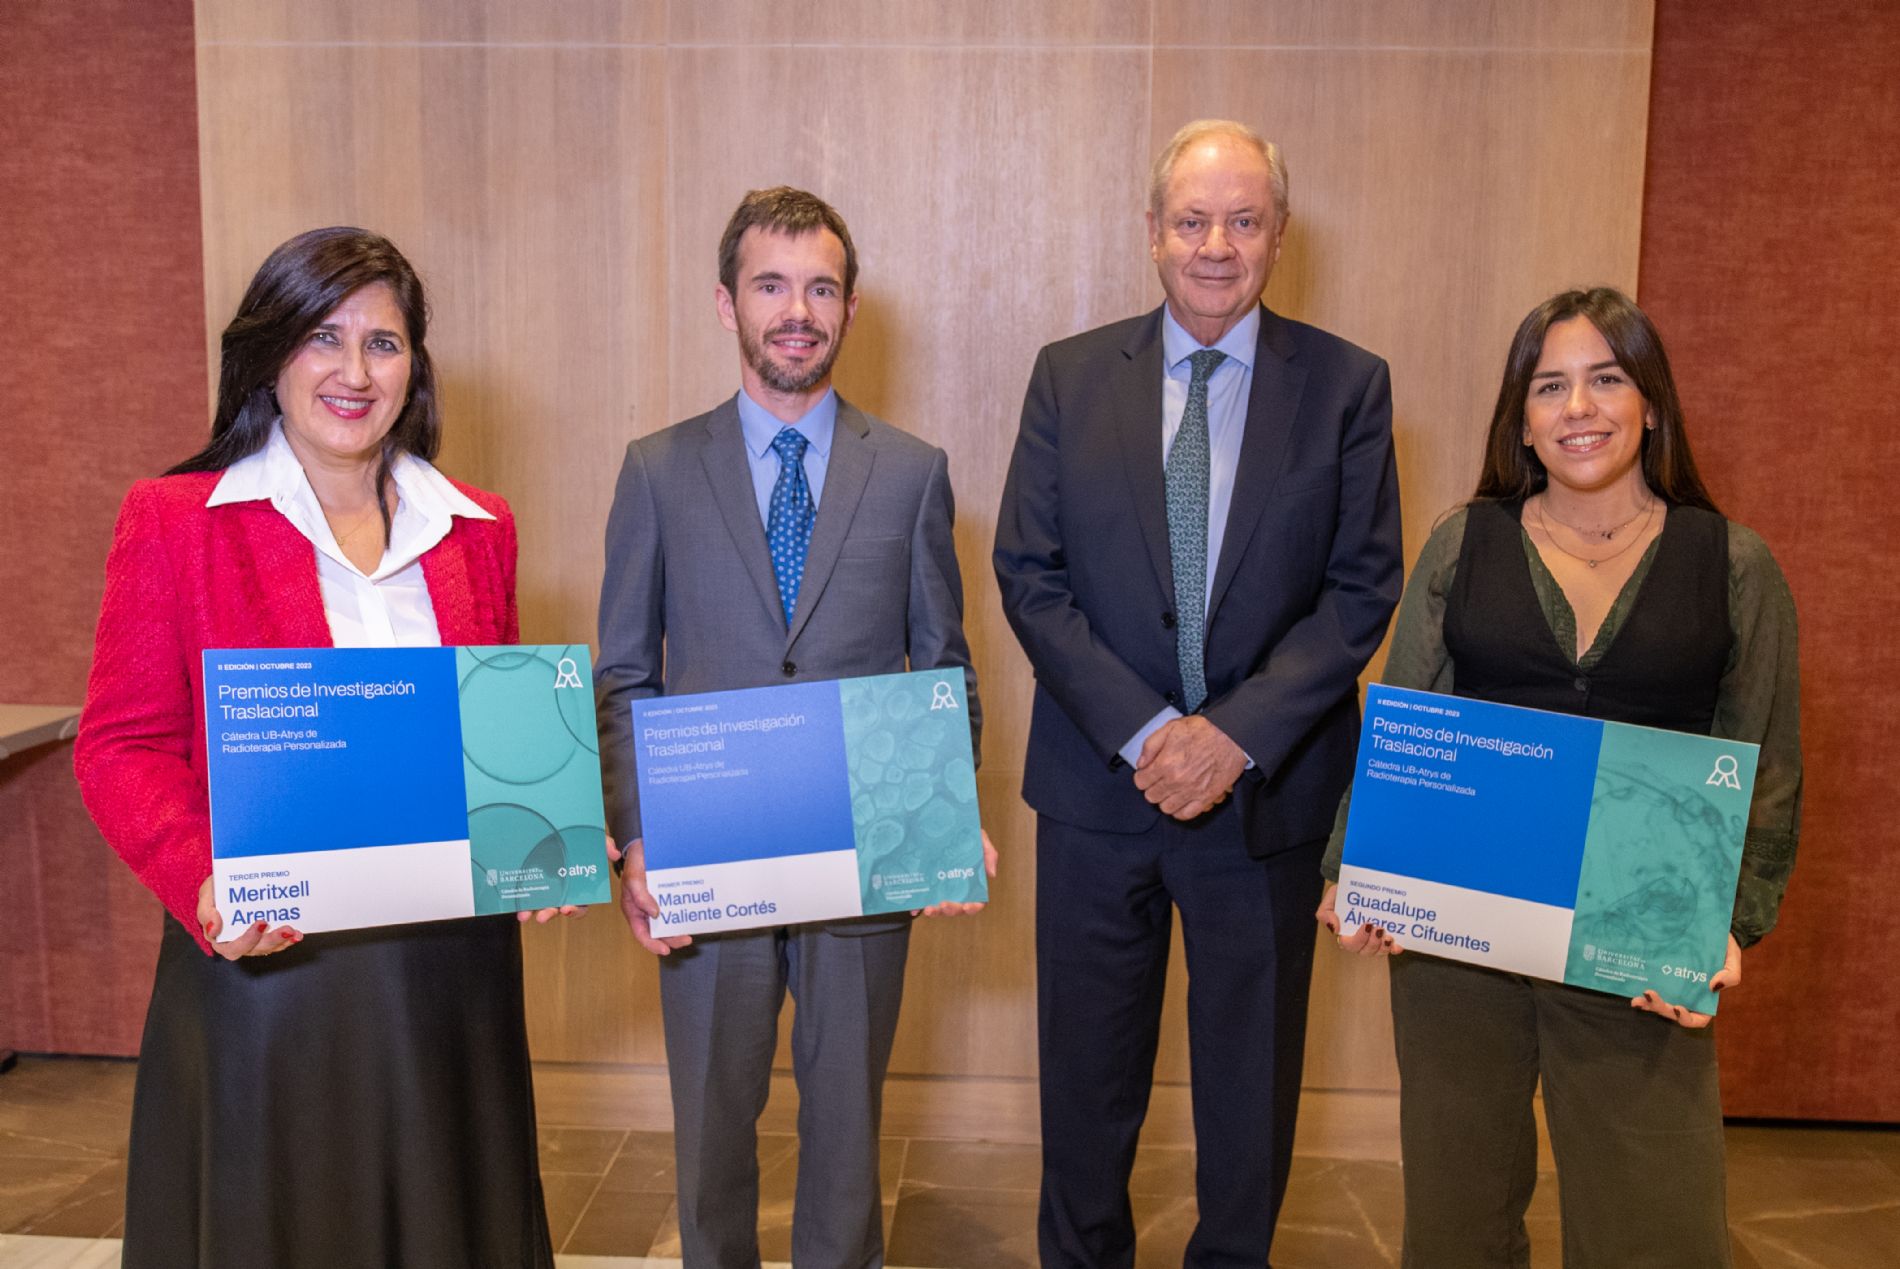 Premio para Guadalupe lvarez, investigadora de la Fundacin Centro Mdico de Asturias, por los estudios genmicos basados en biopsia lquida sobre pacientes tratados con radioterapia